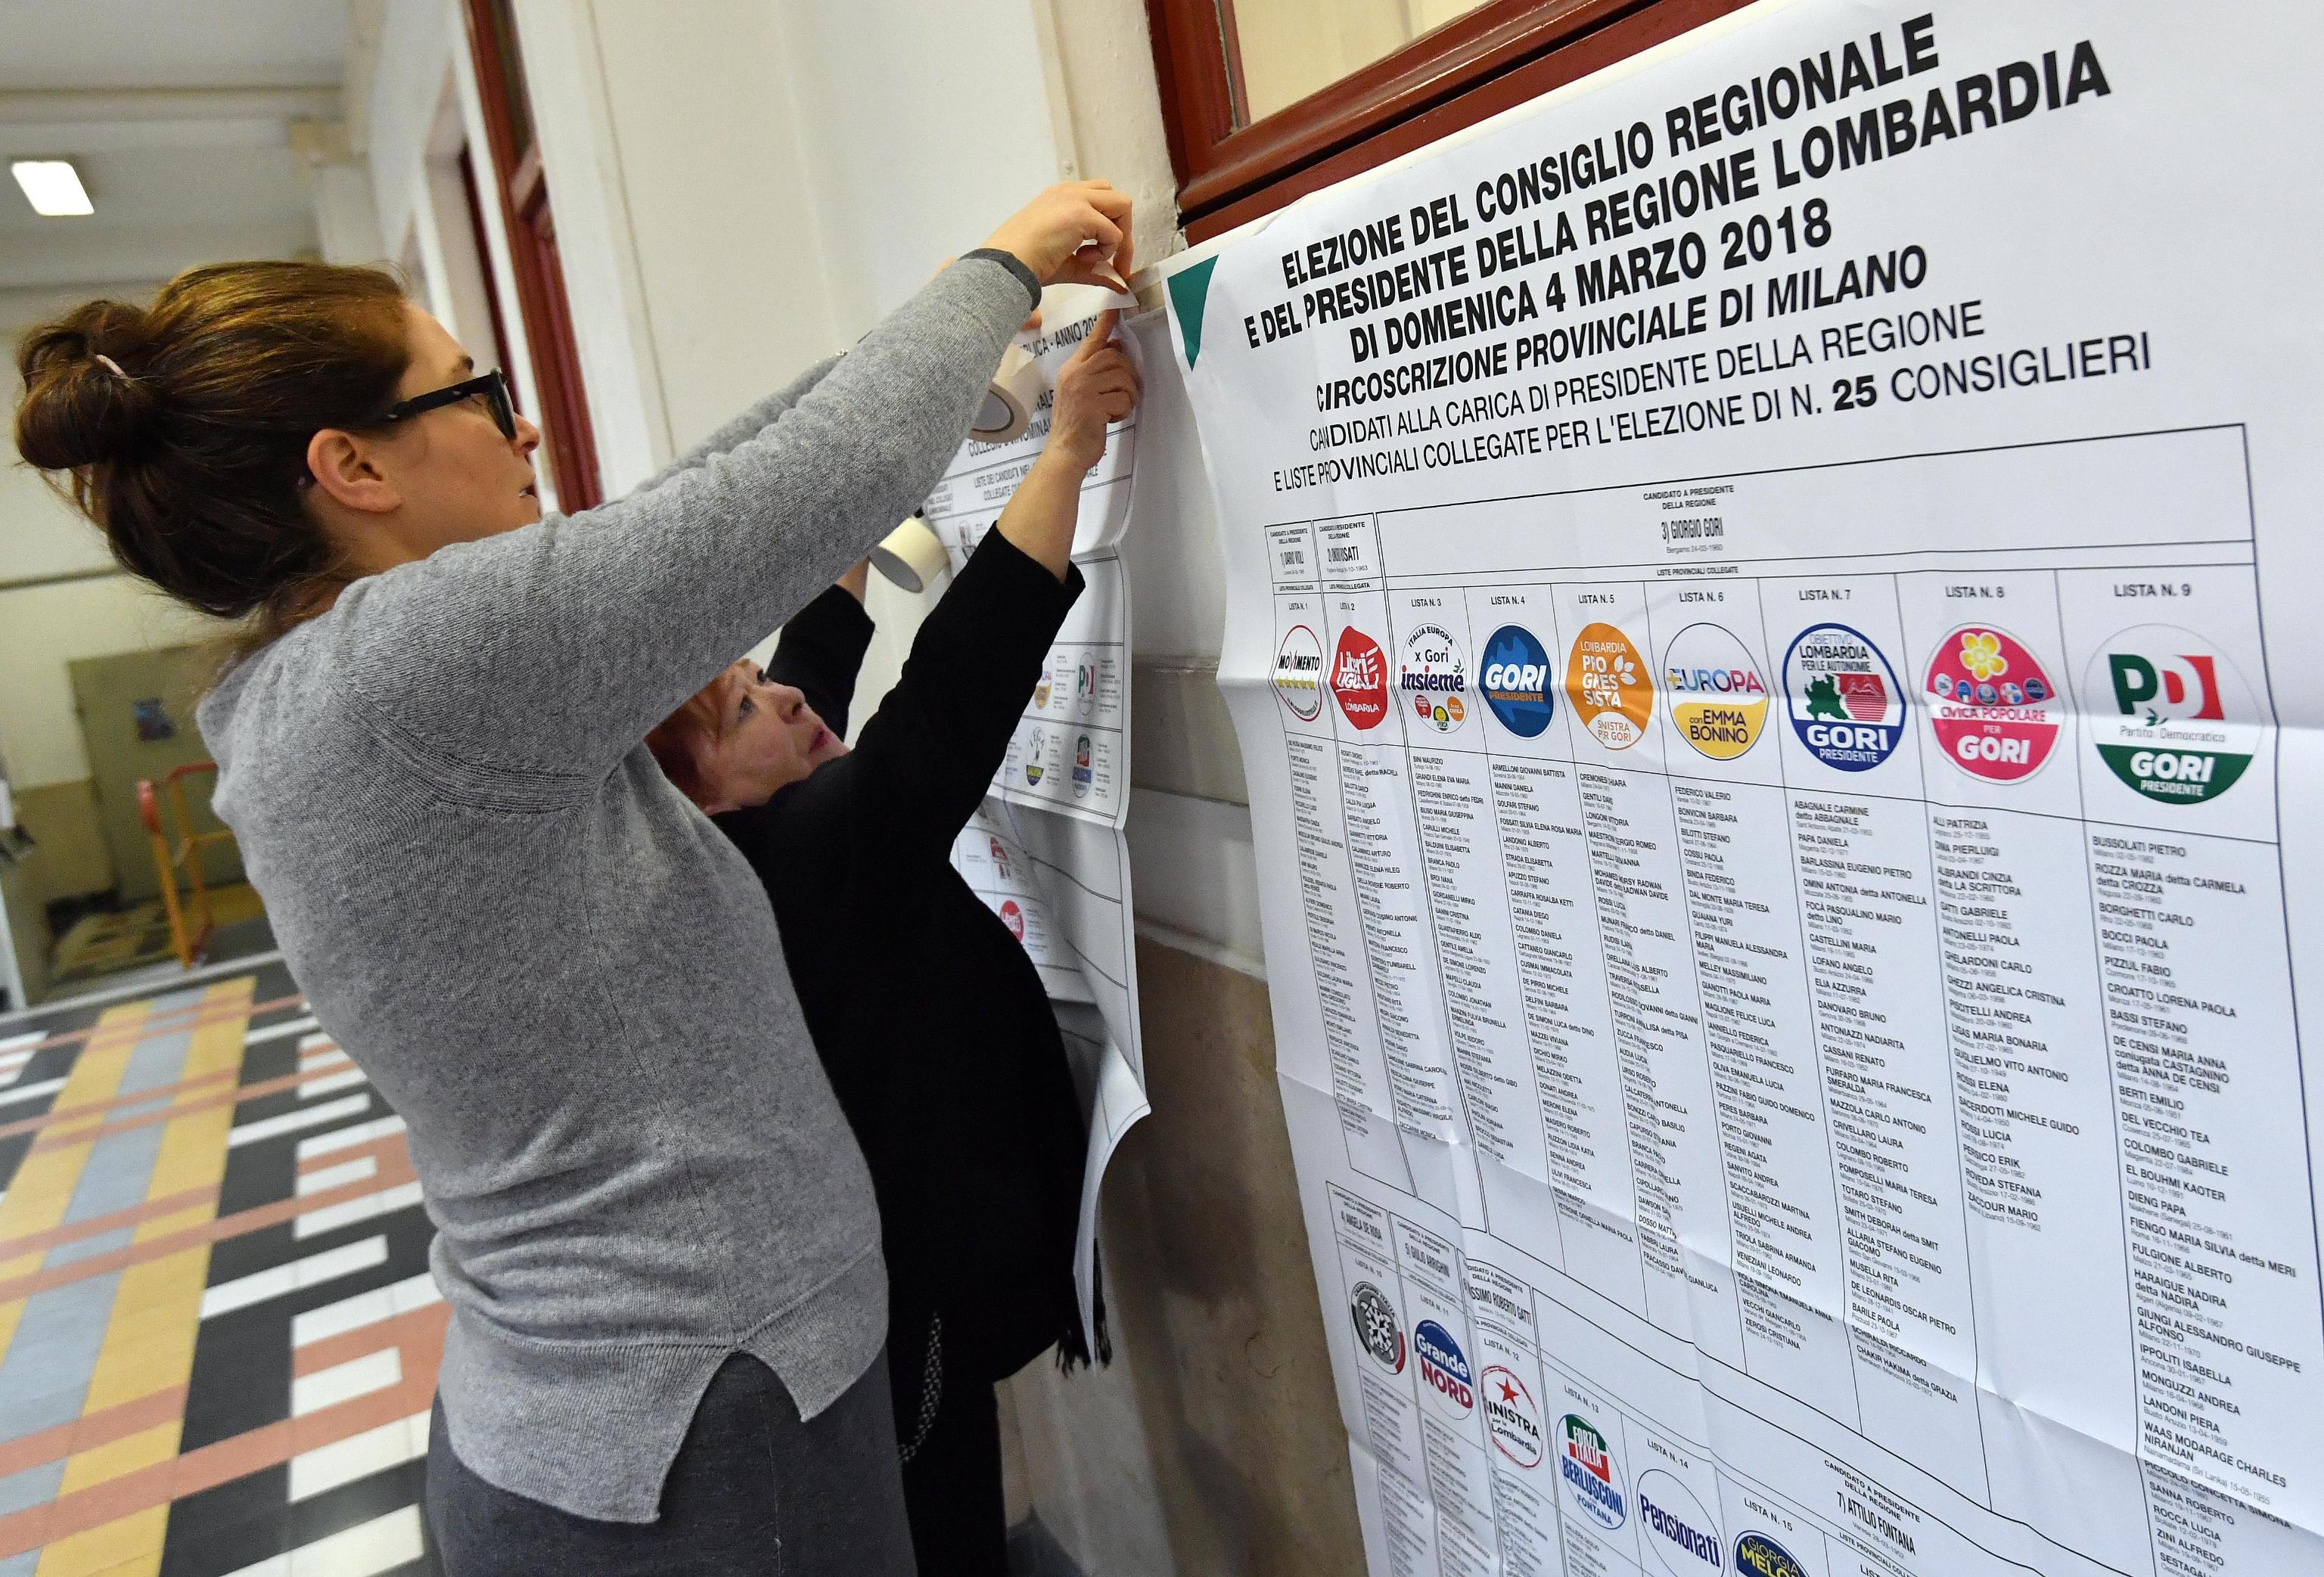 Σε εξέλιξη η ψηφοφορία για τις βουλευτικές εκλογές στην Ιταλία